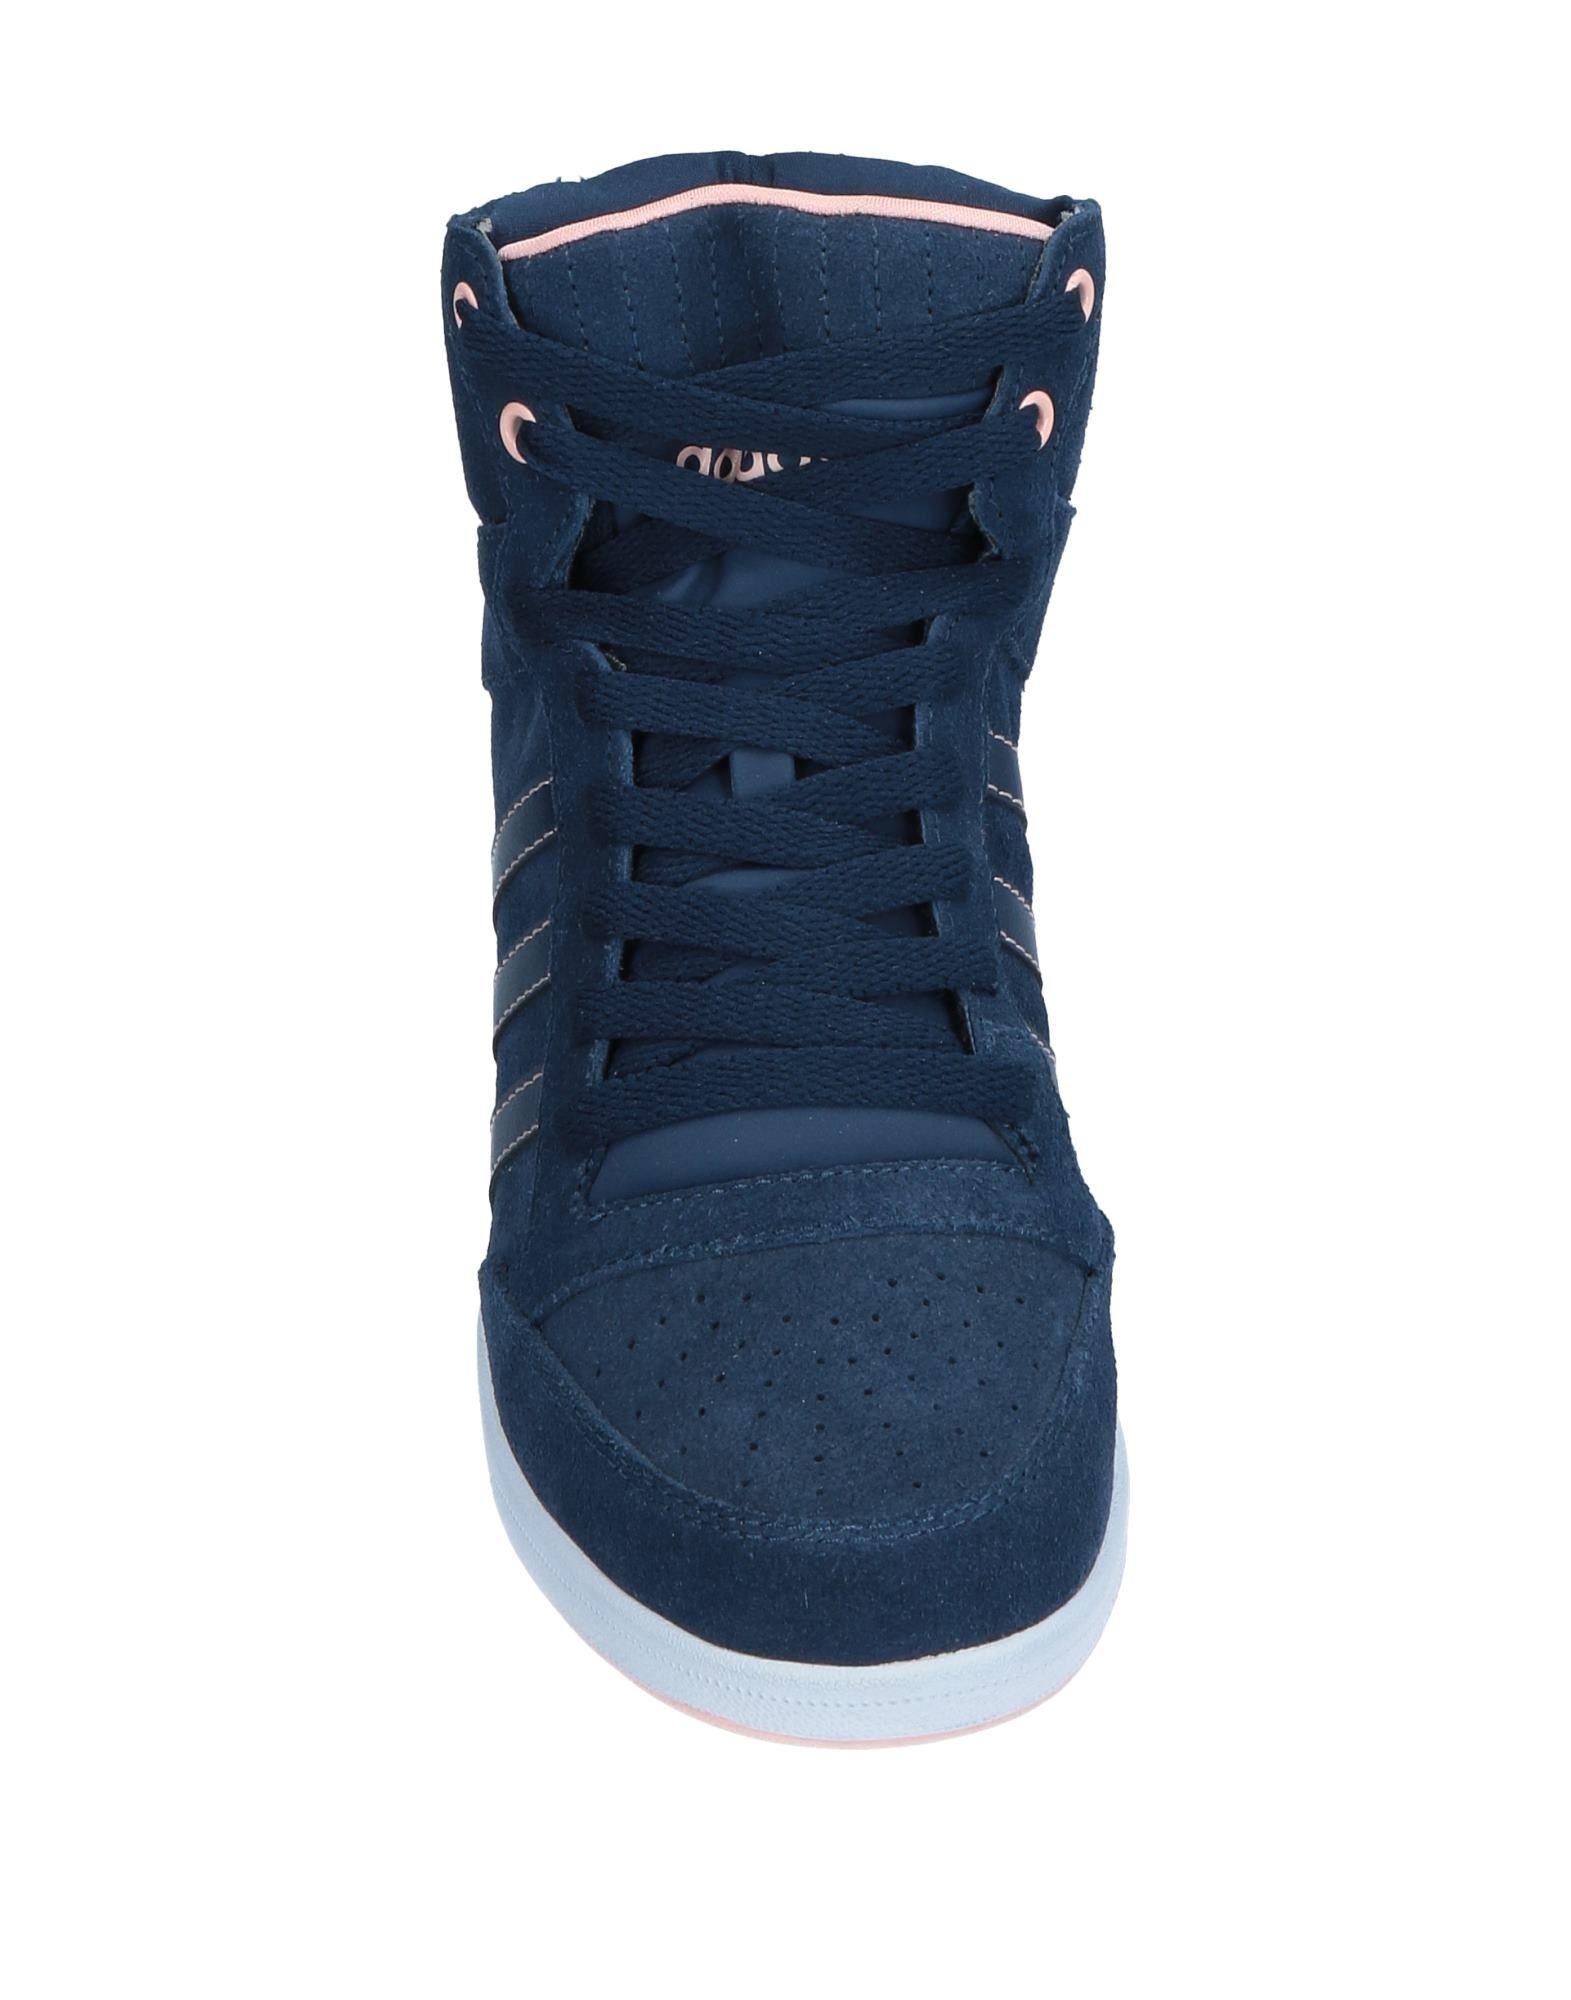 Adidas Neo Suede High-tops \u0026 Sneakers in Dark Blue (Blue) - Lyst